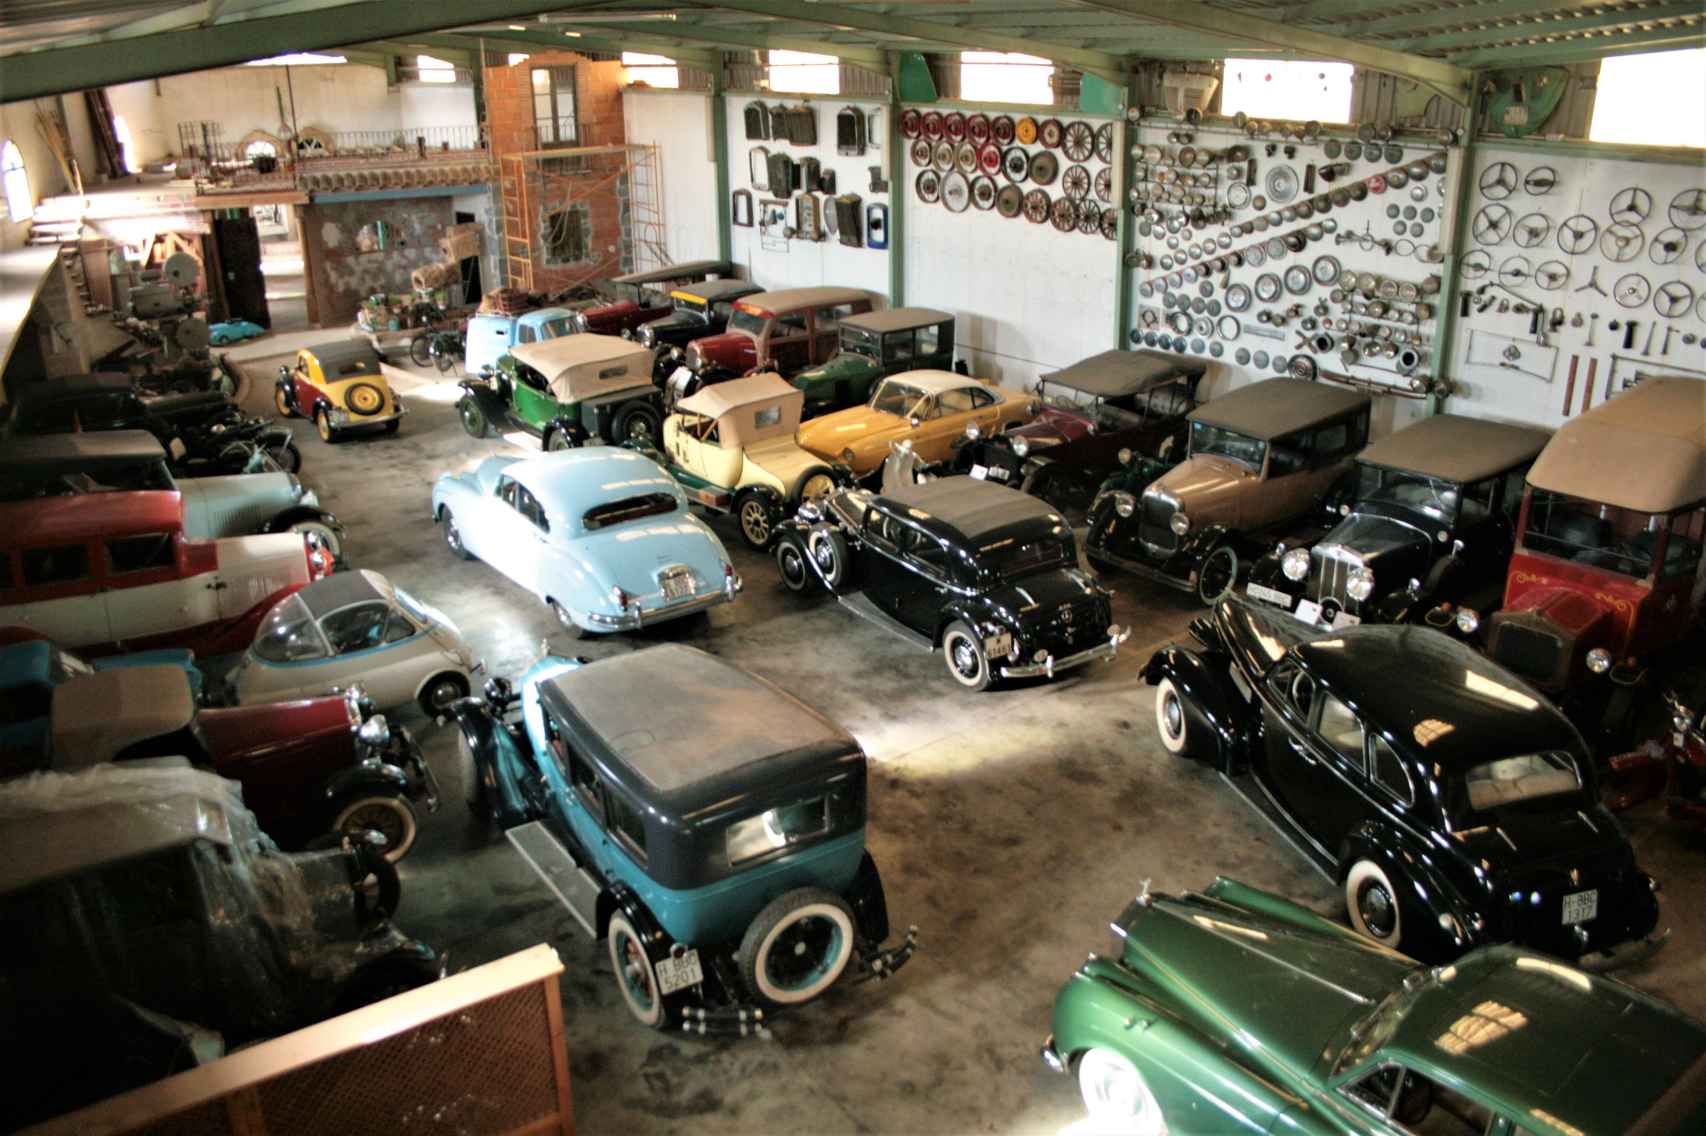 Vista del garaje donde Pepe Moreno expone sus vehículos históricos tras restaurarlos.